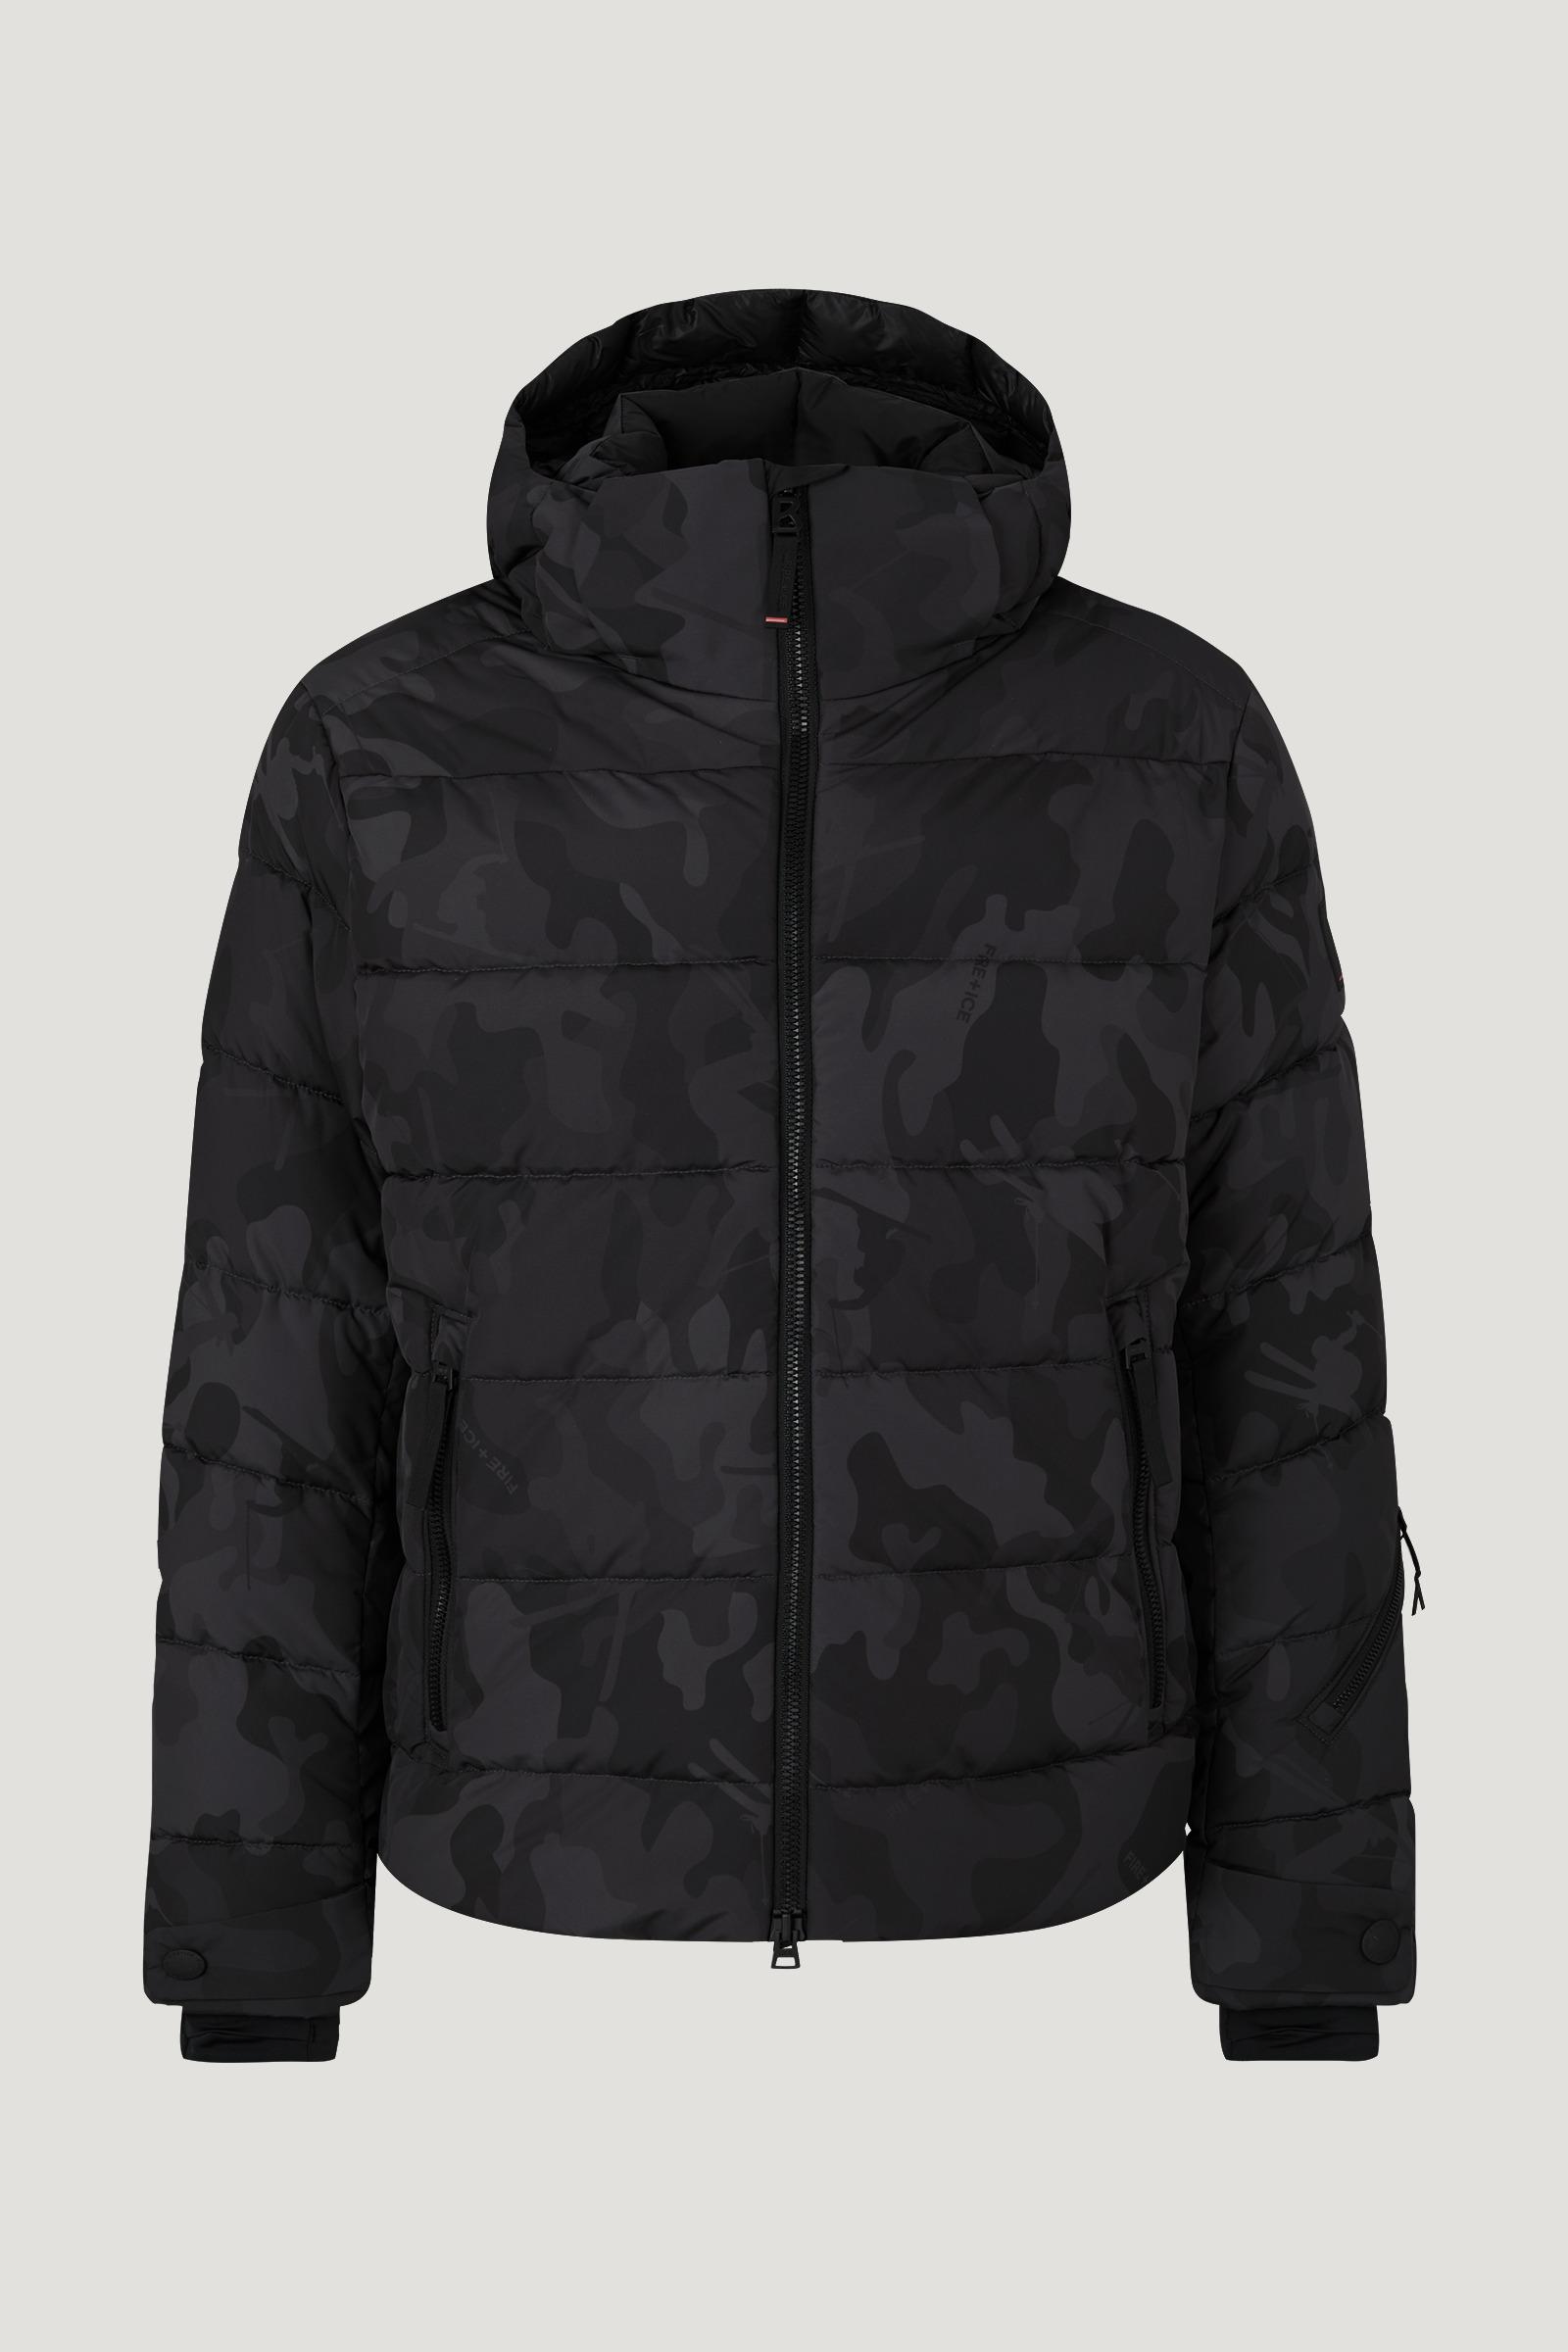 Bogner Rubber Luka Quilted Ski Jacket in Black/Gray (Black) for Men | Lyst